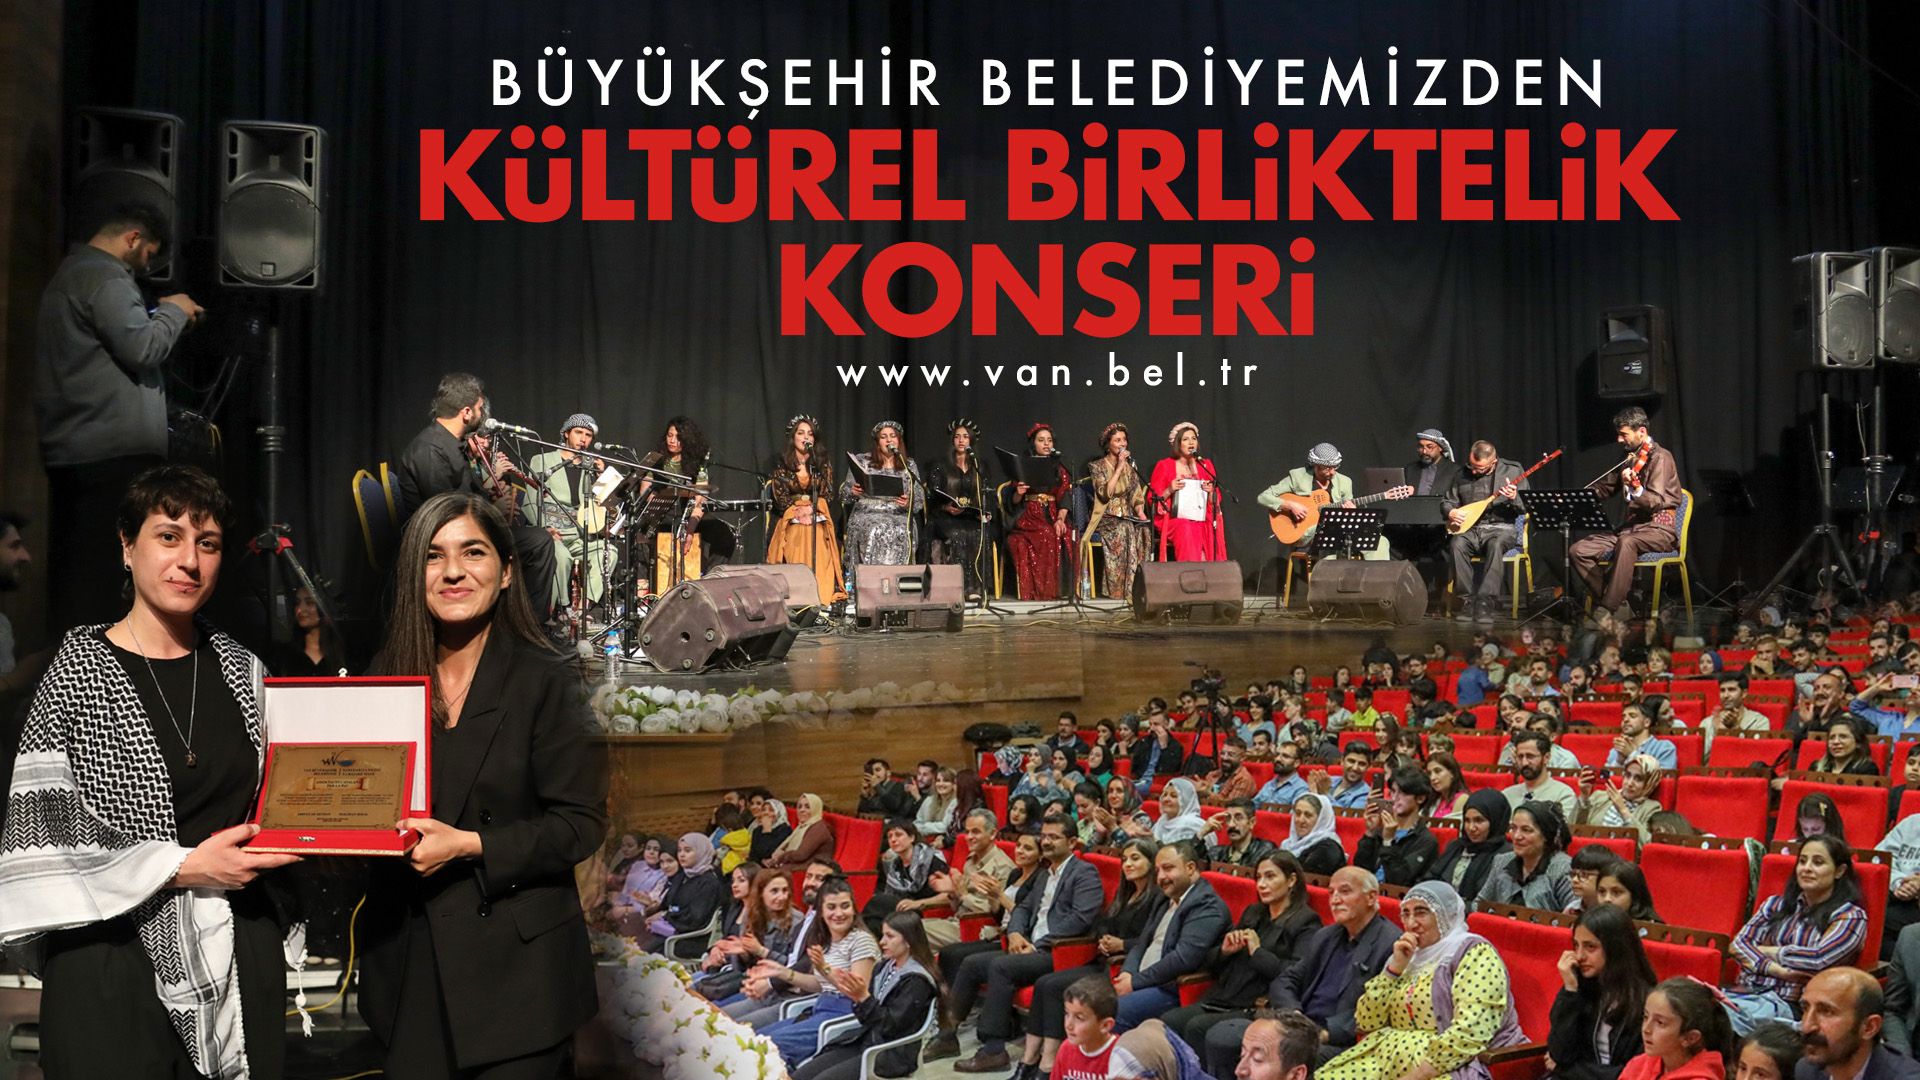 Van Büyükşehir Belediyesi'nden Muhteşem Kültürel Birliktelik Konseri!